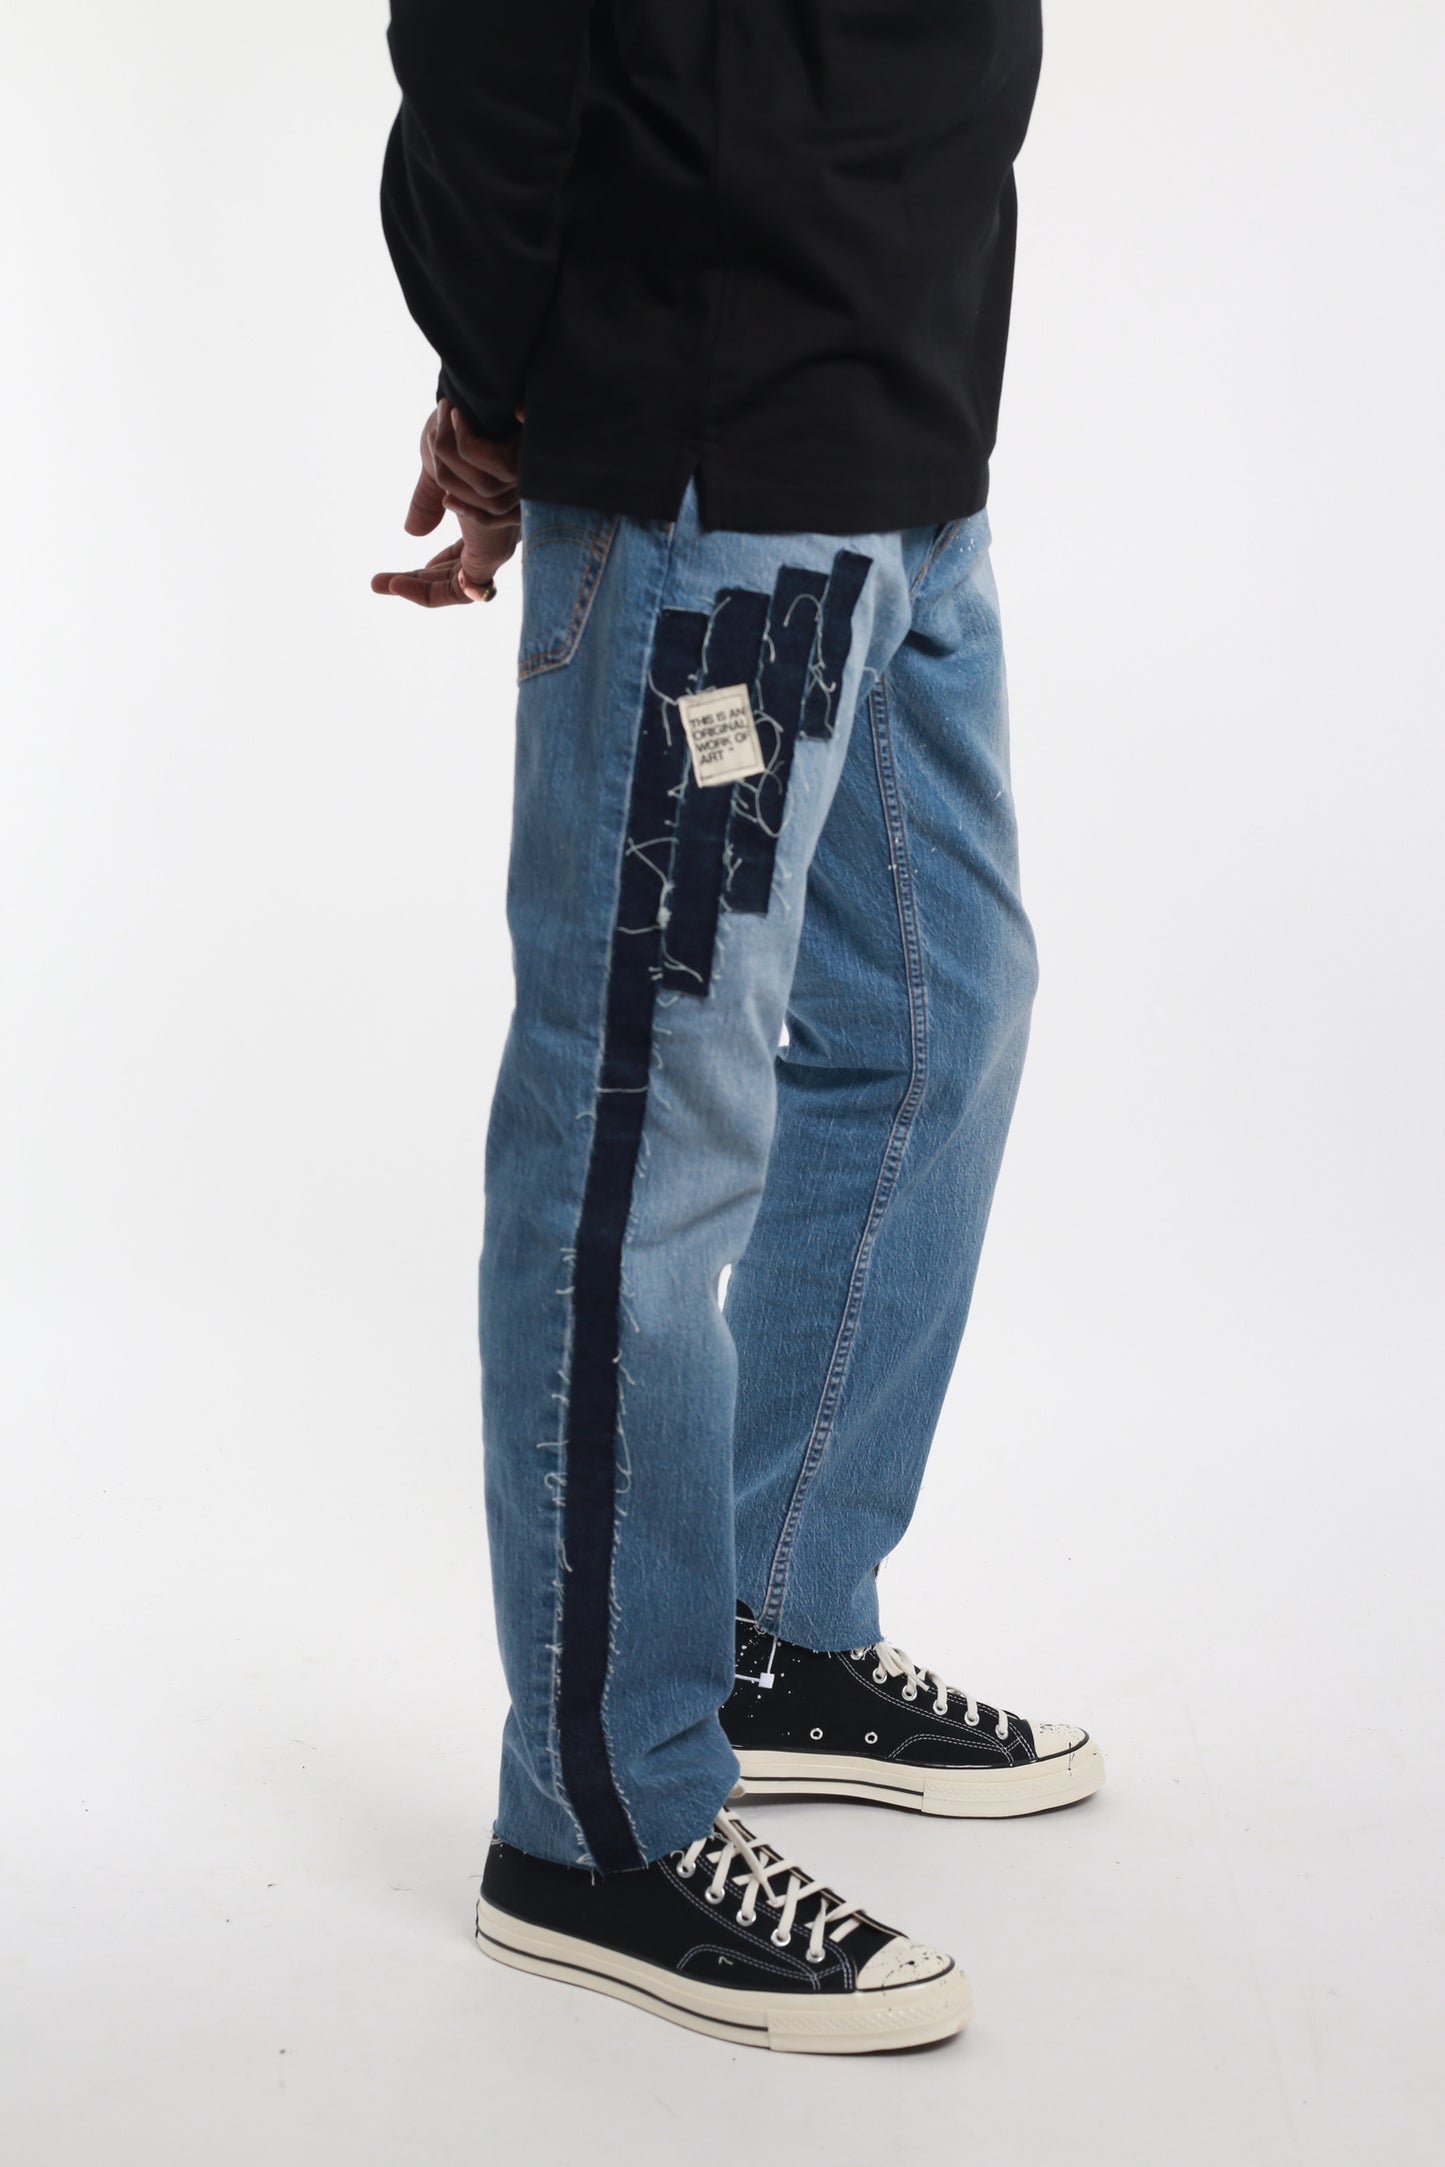 the original "OG" denim jeans